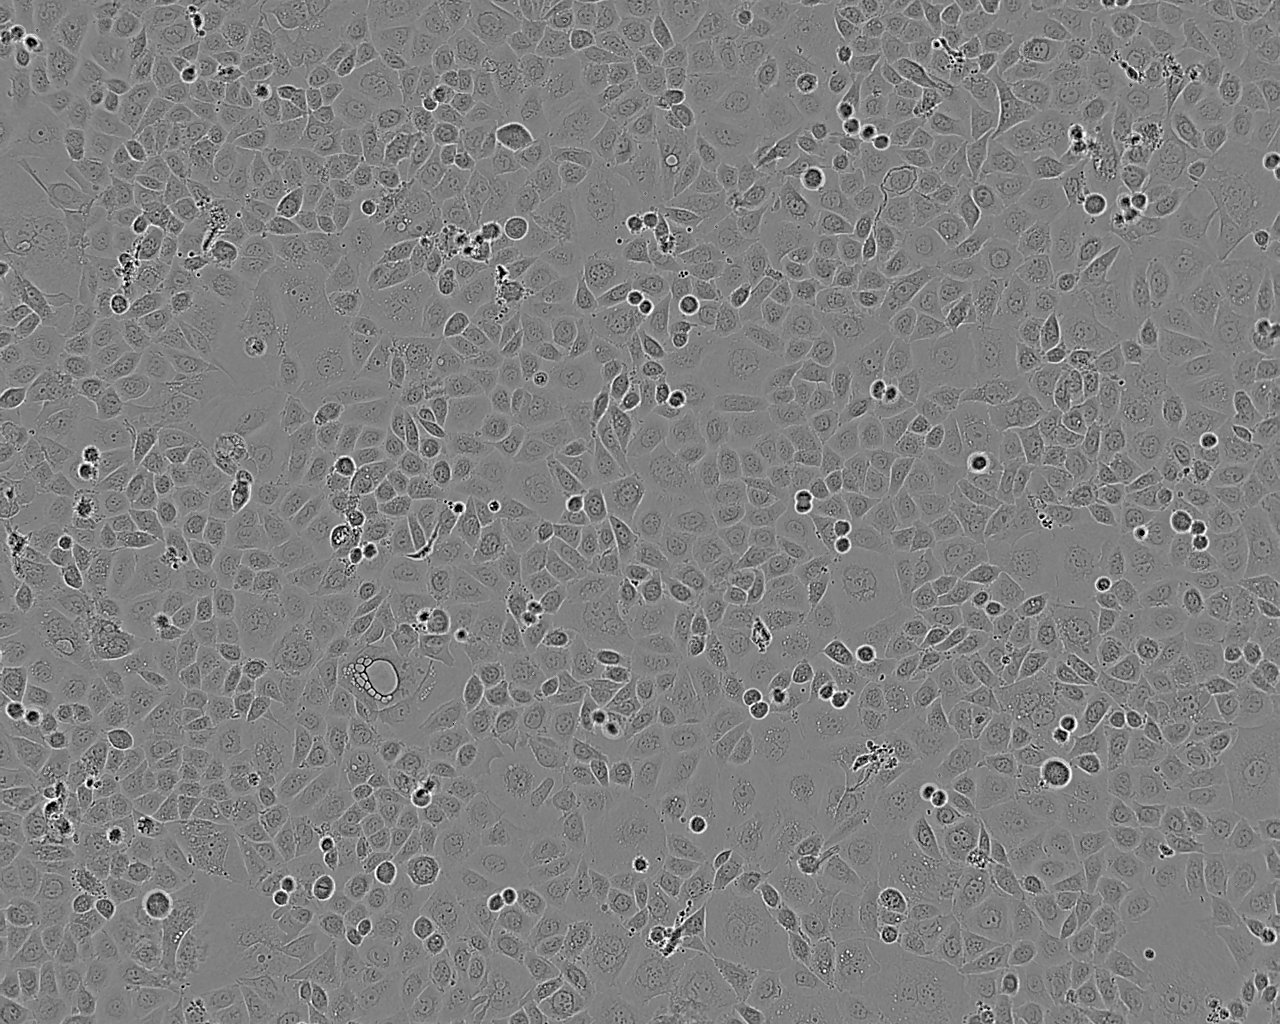 SKO-007 epithelioid cells人多发性骨髓瘤细胞系,SKO-007 epithelioid cells